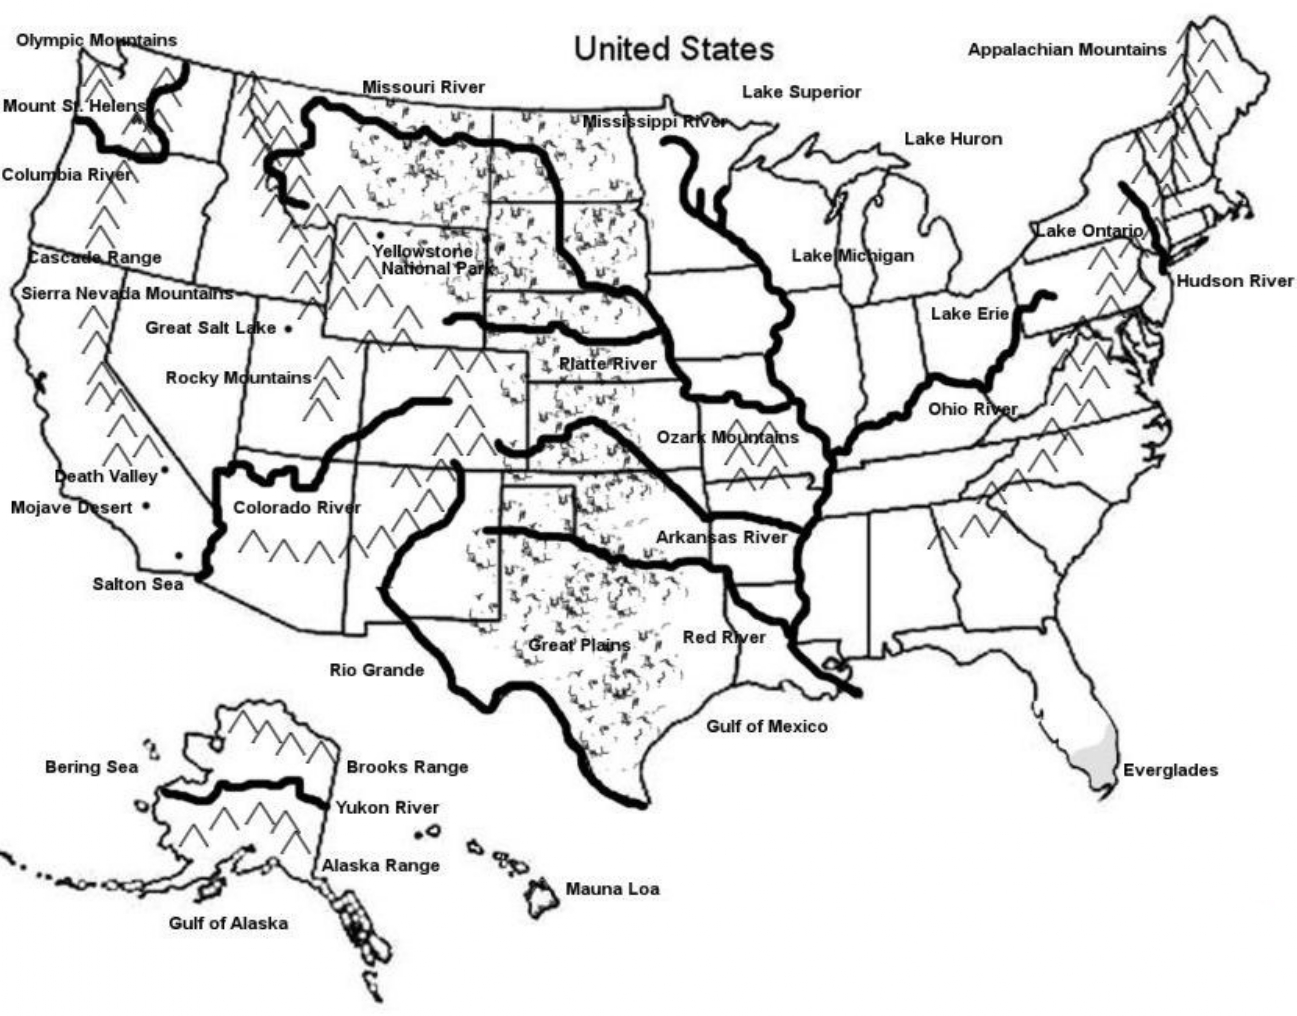 U.S Mountain Map Black & White